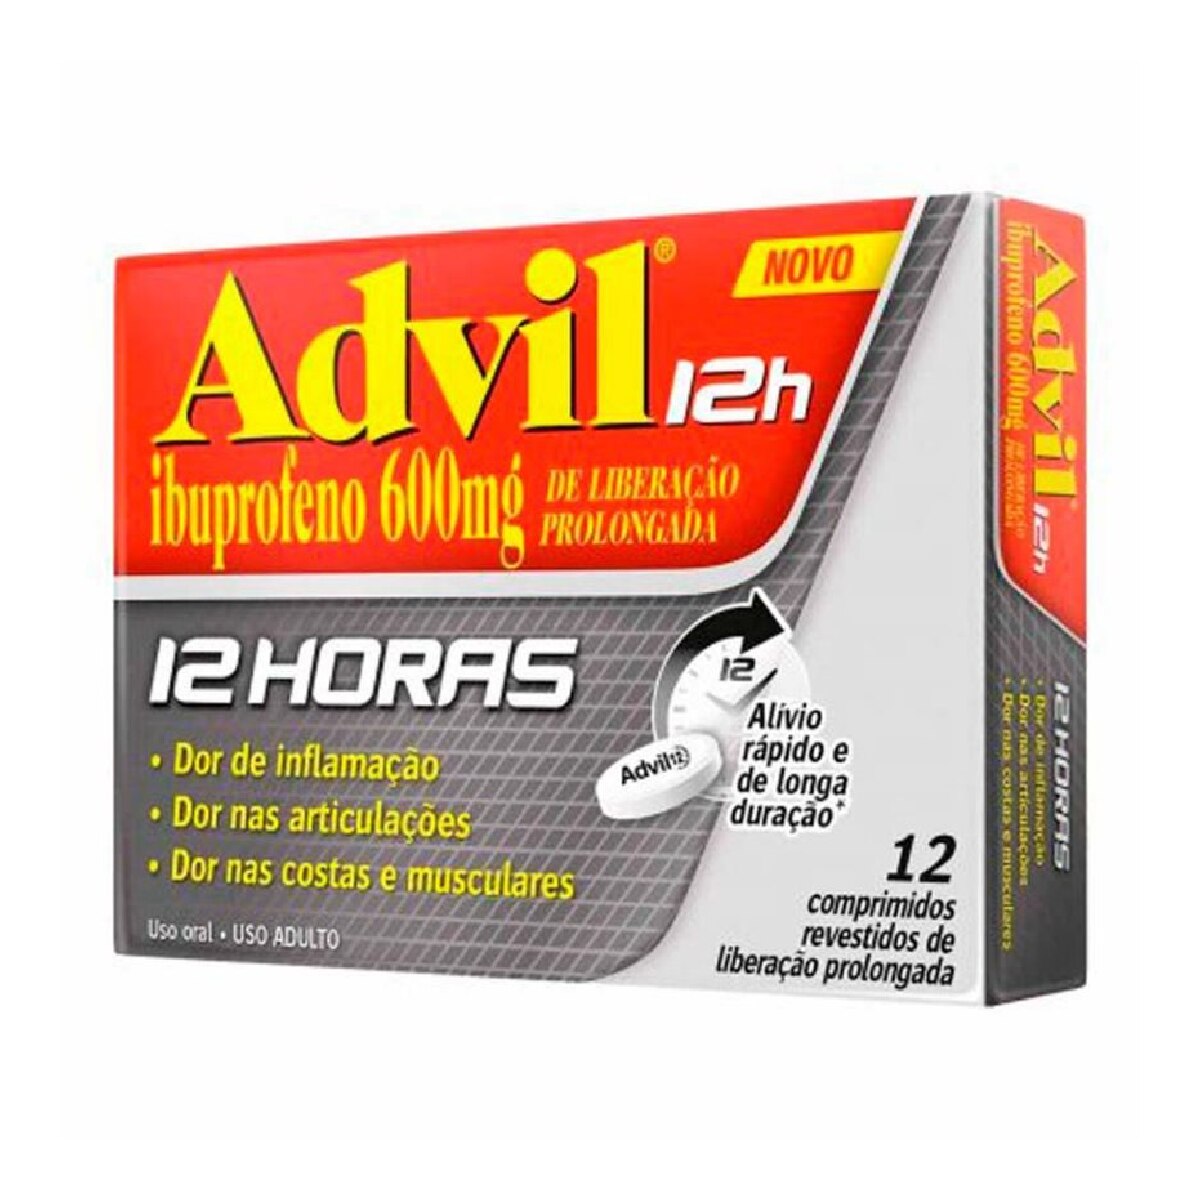 Advil 12 Horas 600mg 12 Comprimidos Revestidos